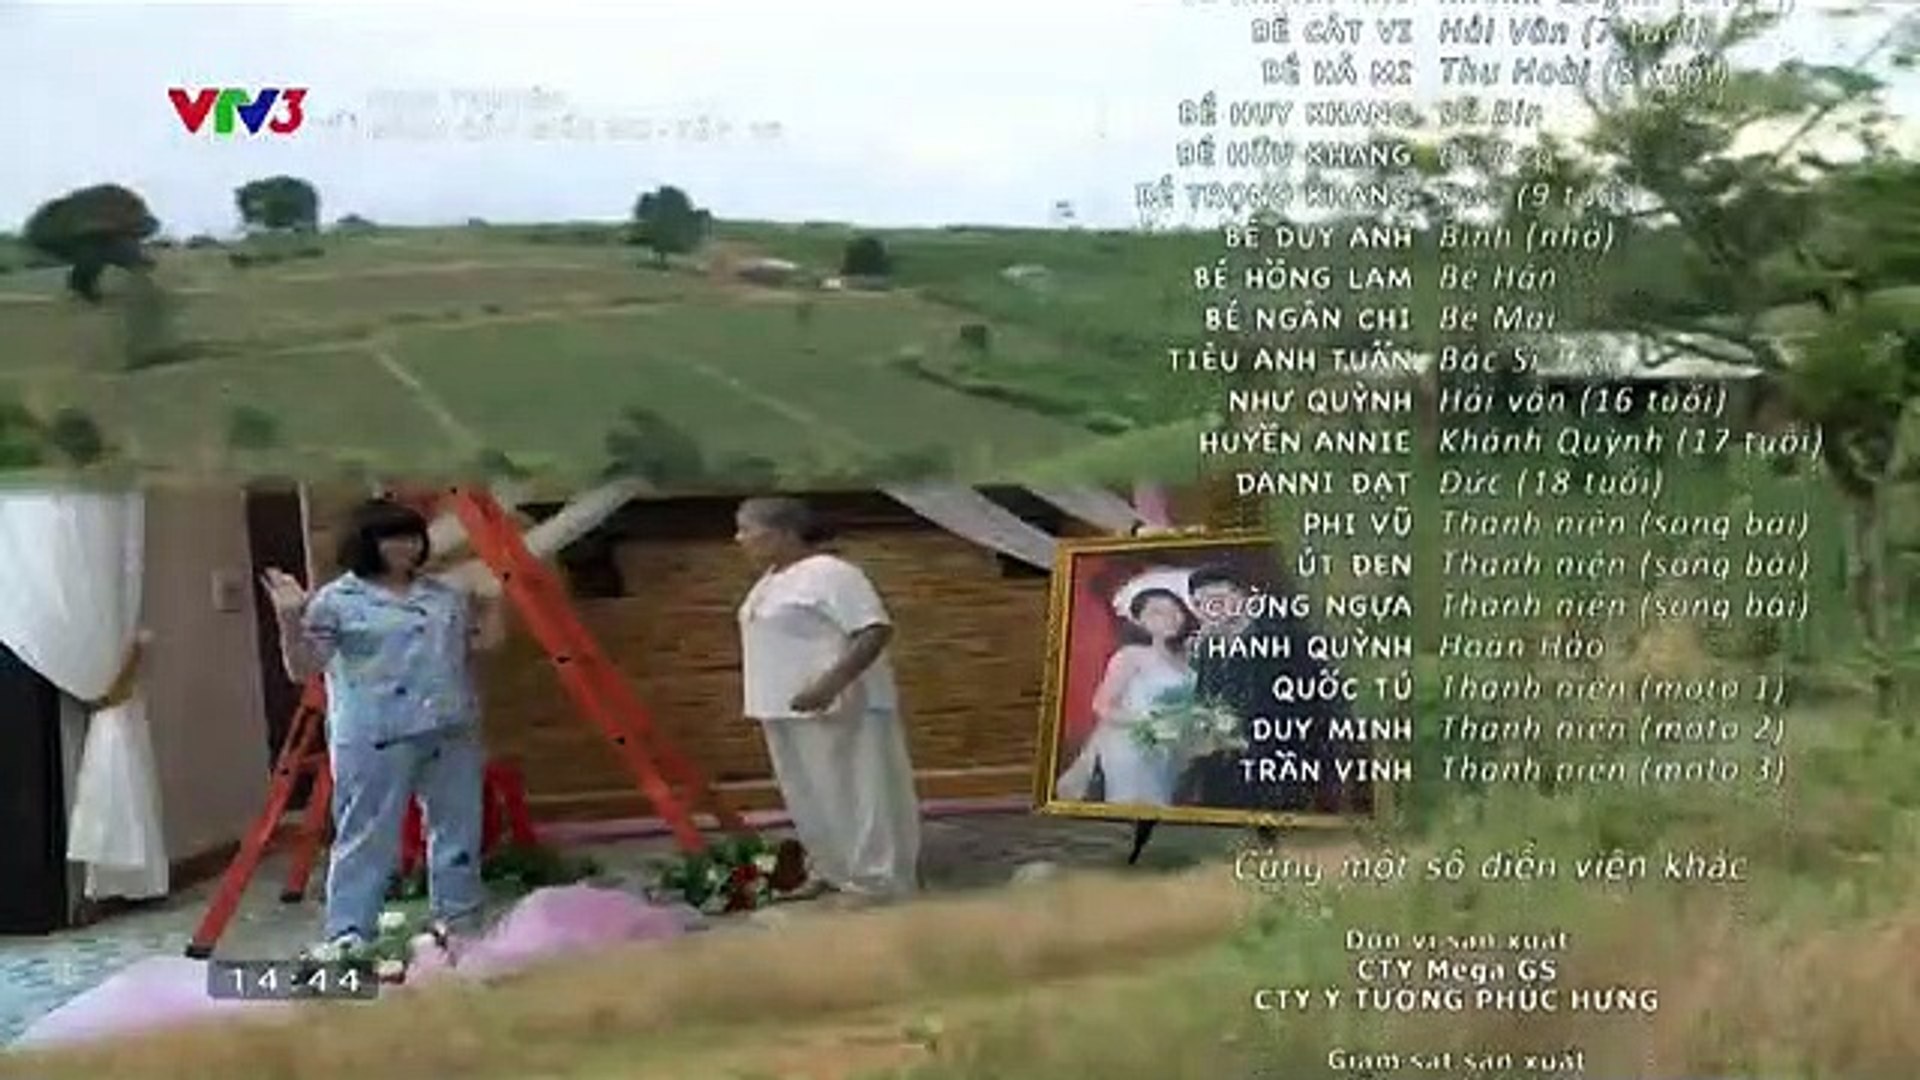 Đánh Cắp Giấc Mơ Tập 17 -- Phim Việt Nam VTV3 - Phim Danh Cap Giac Mo Tap 18 - Phim Danh Cap Giac Mo